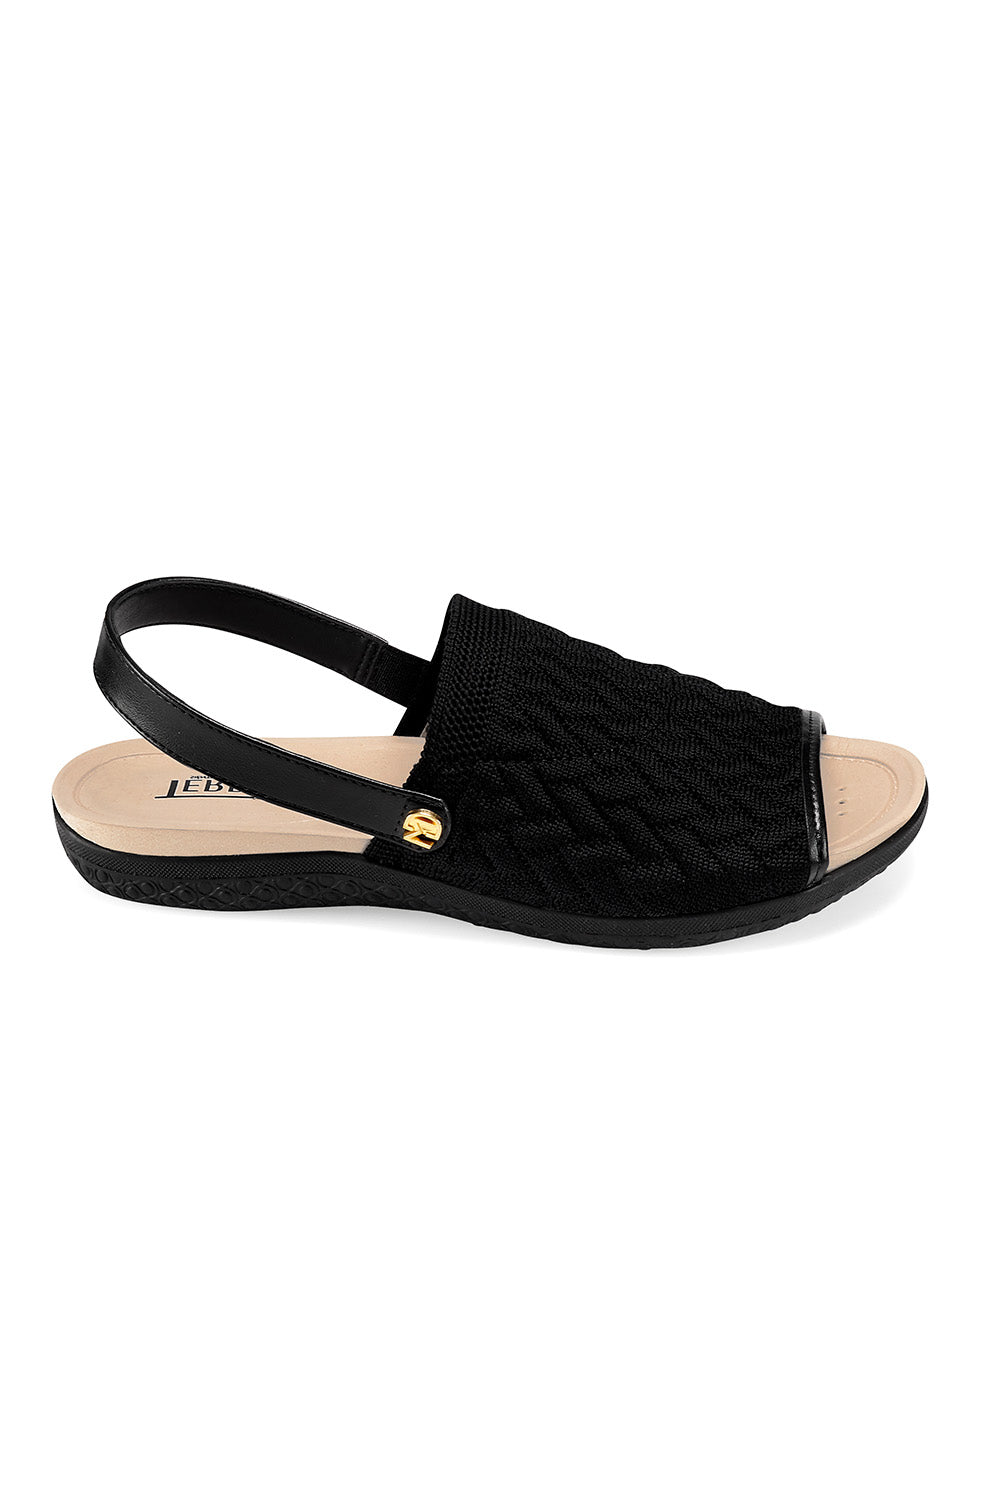 Sandalias Color Negro Para Dama TERRATI